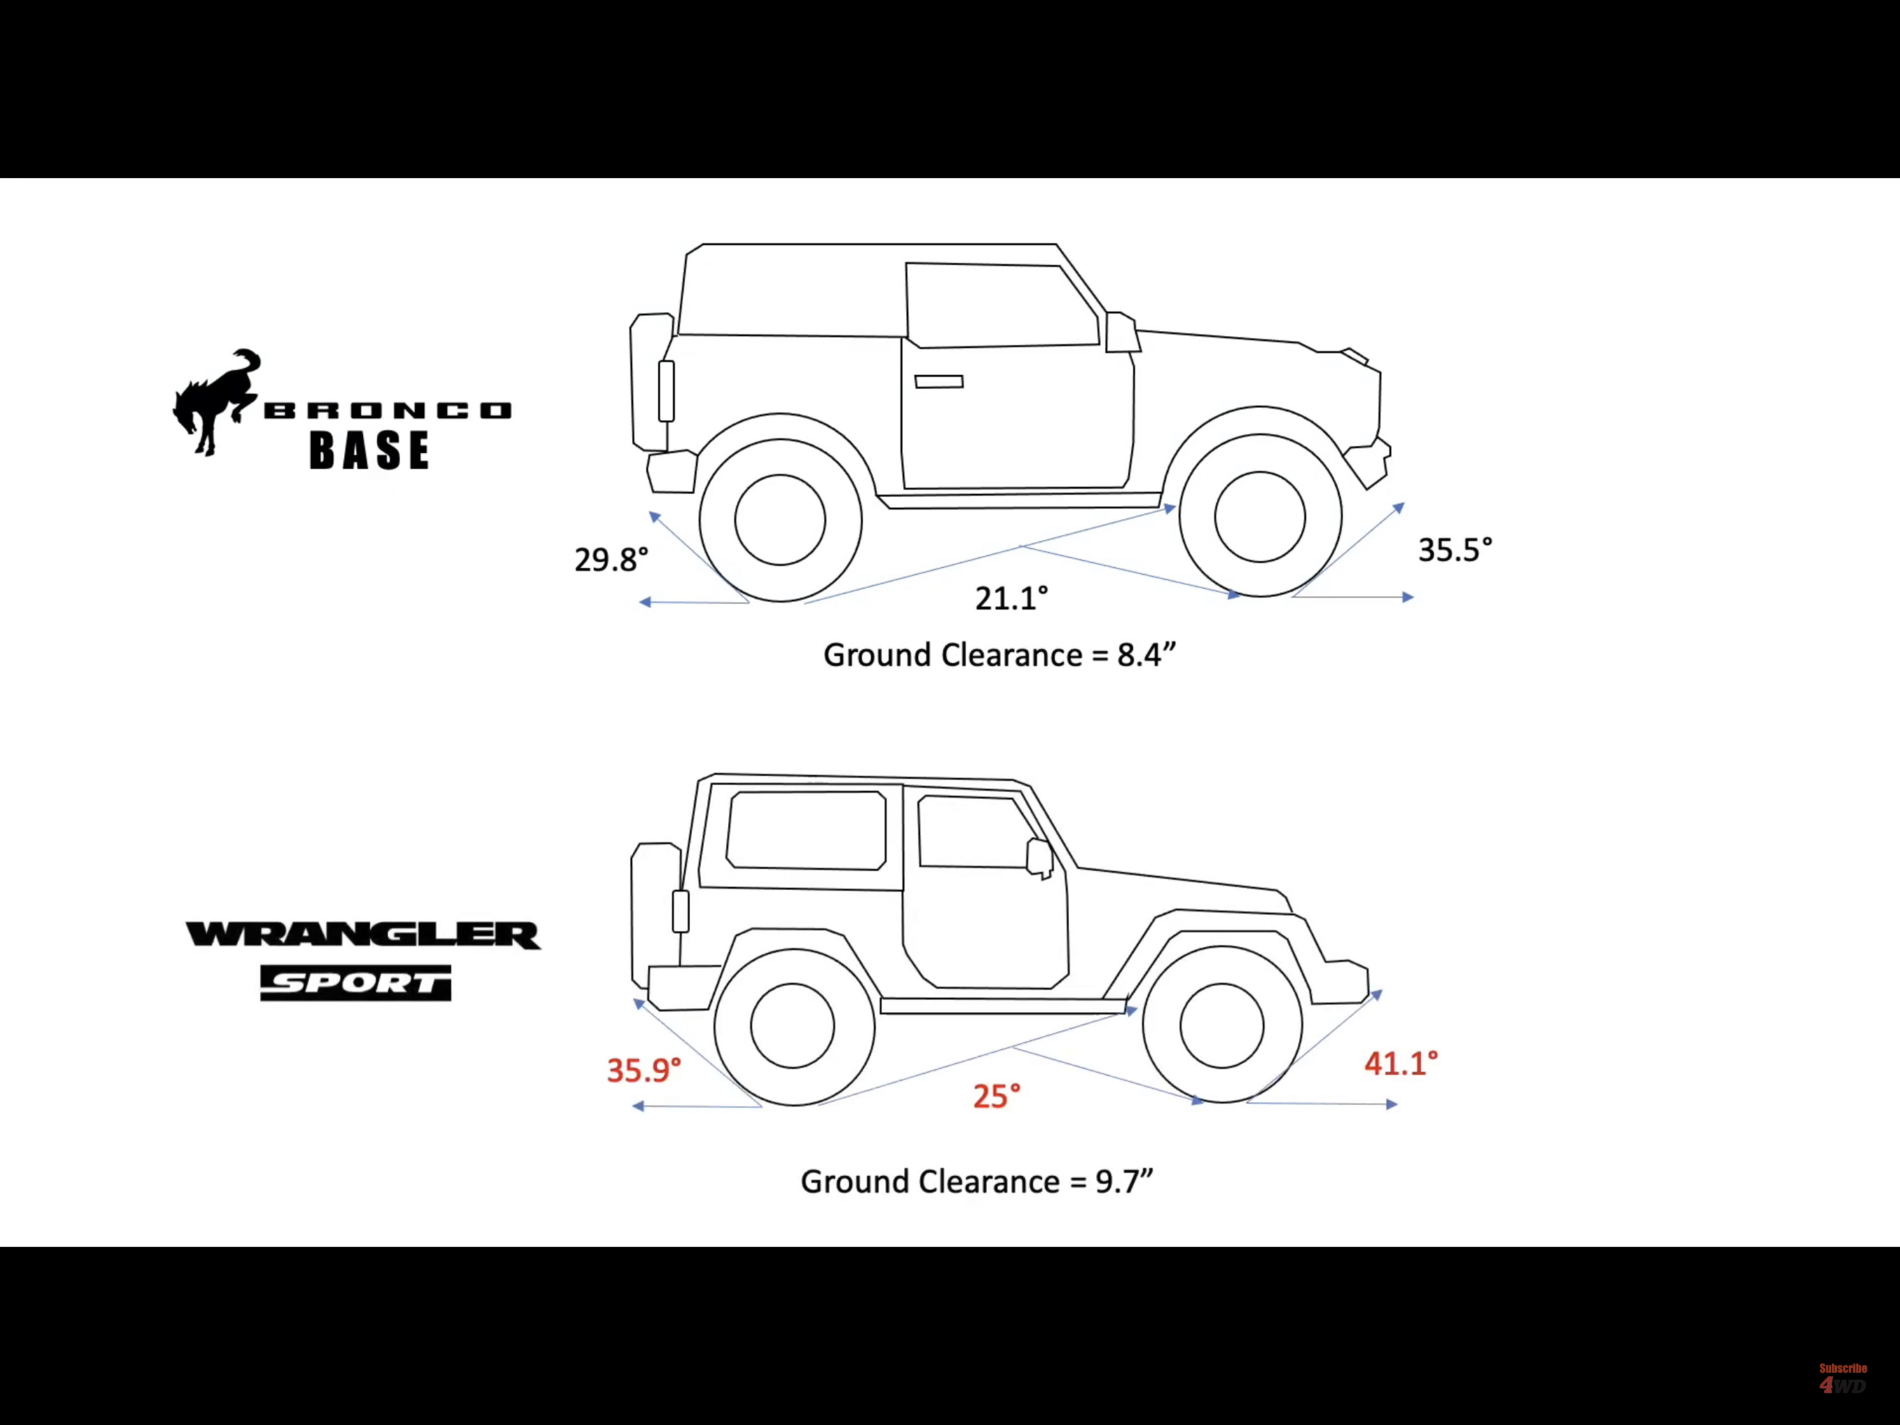 Ford Bronco Any pics of 2021 Bronco size comparison vs other vehicles? 32601D1B-F4CD-48E8-82DA-AD52AE41425A